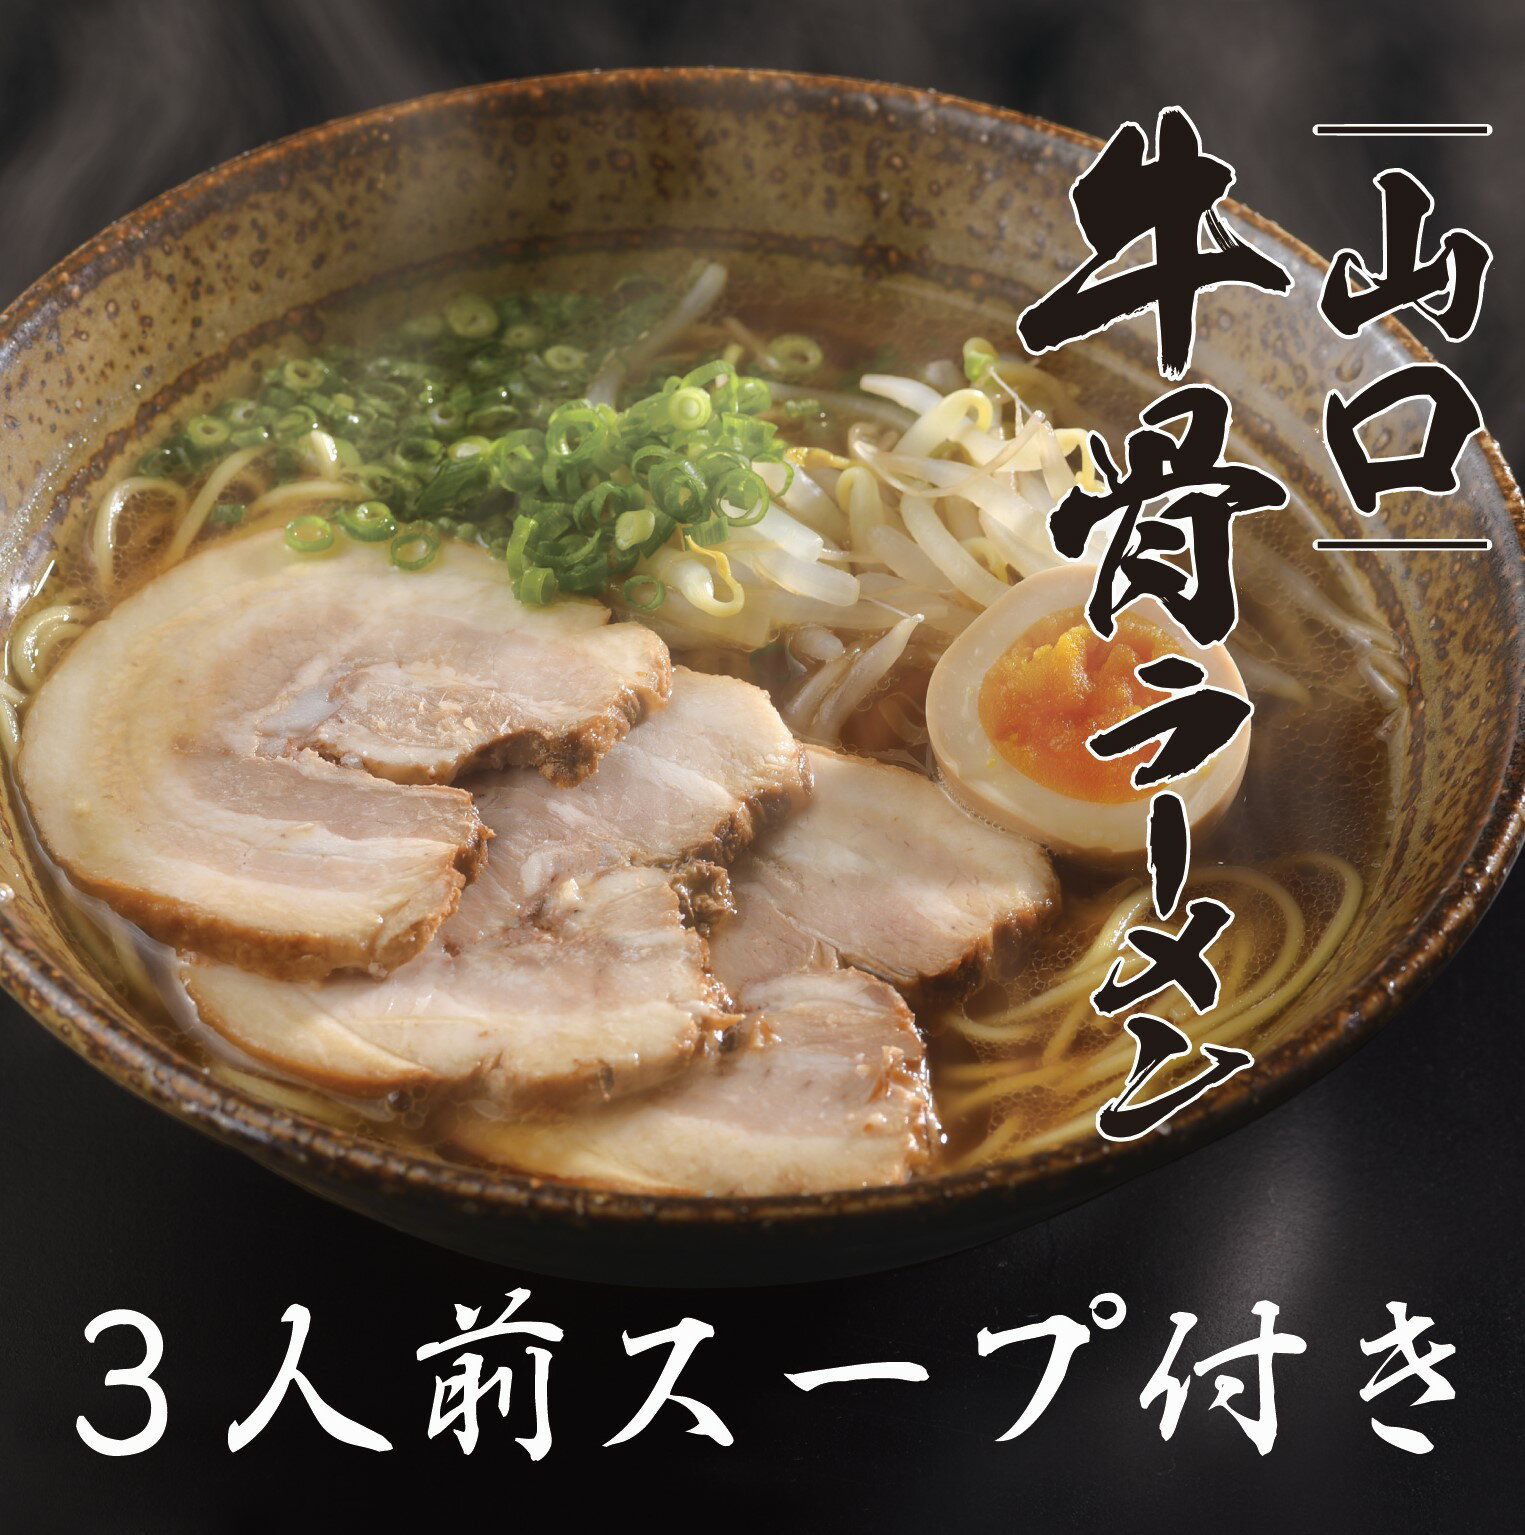 山口牛骨ラーメン 1000円ポッキリ 3食セット 牛脂たっぷりのコク旨スープ 三浦製麺 1000ポキ